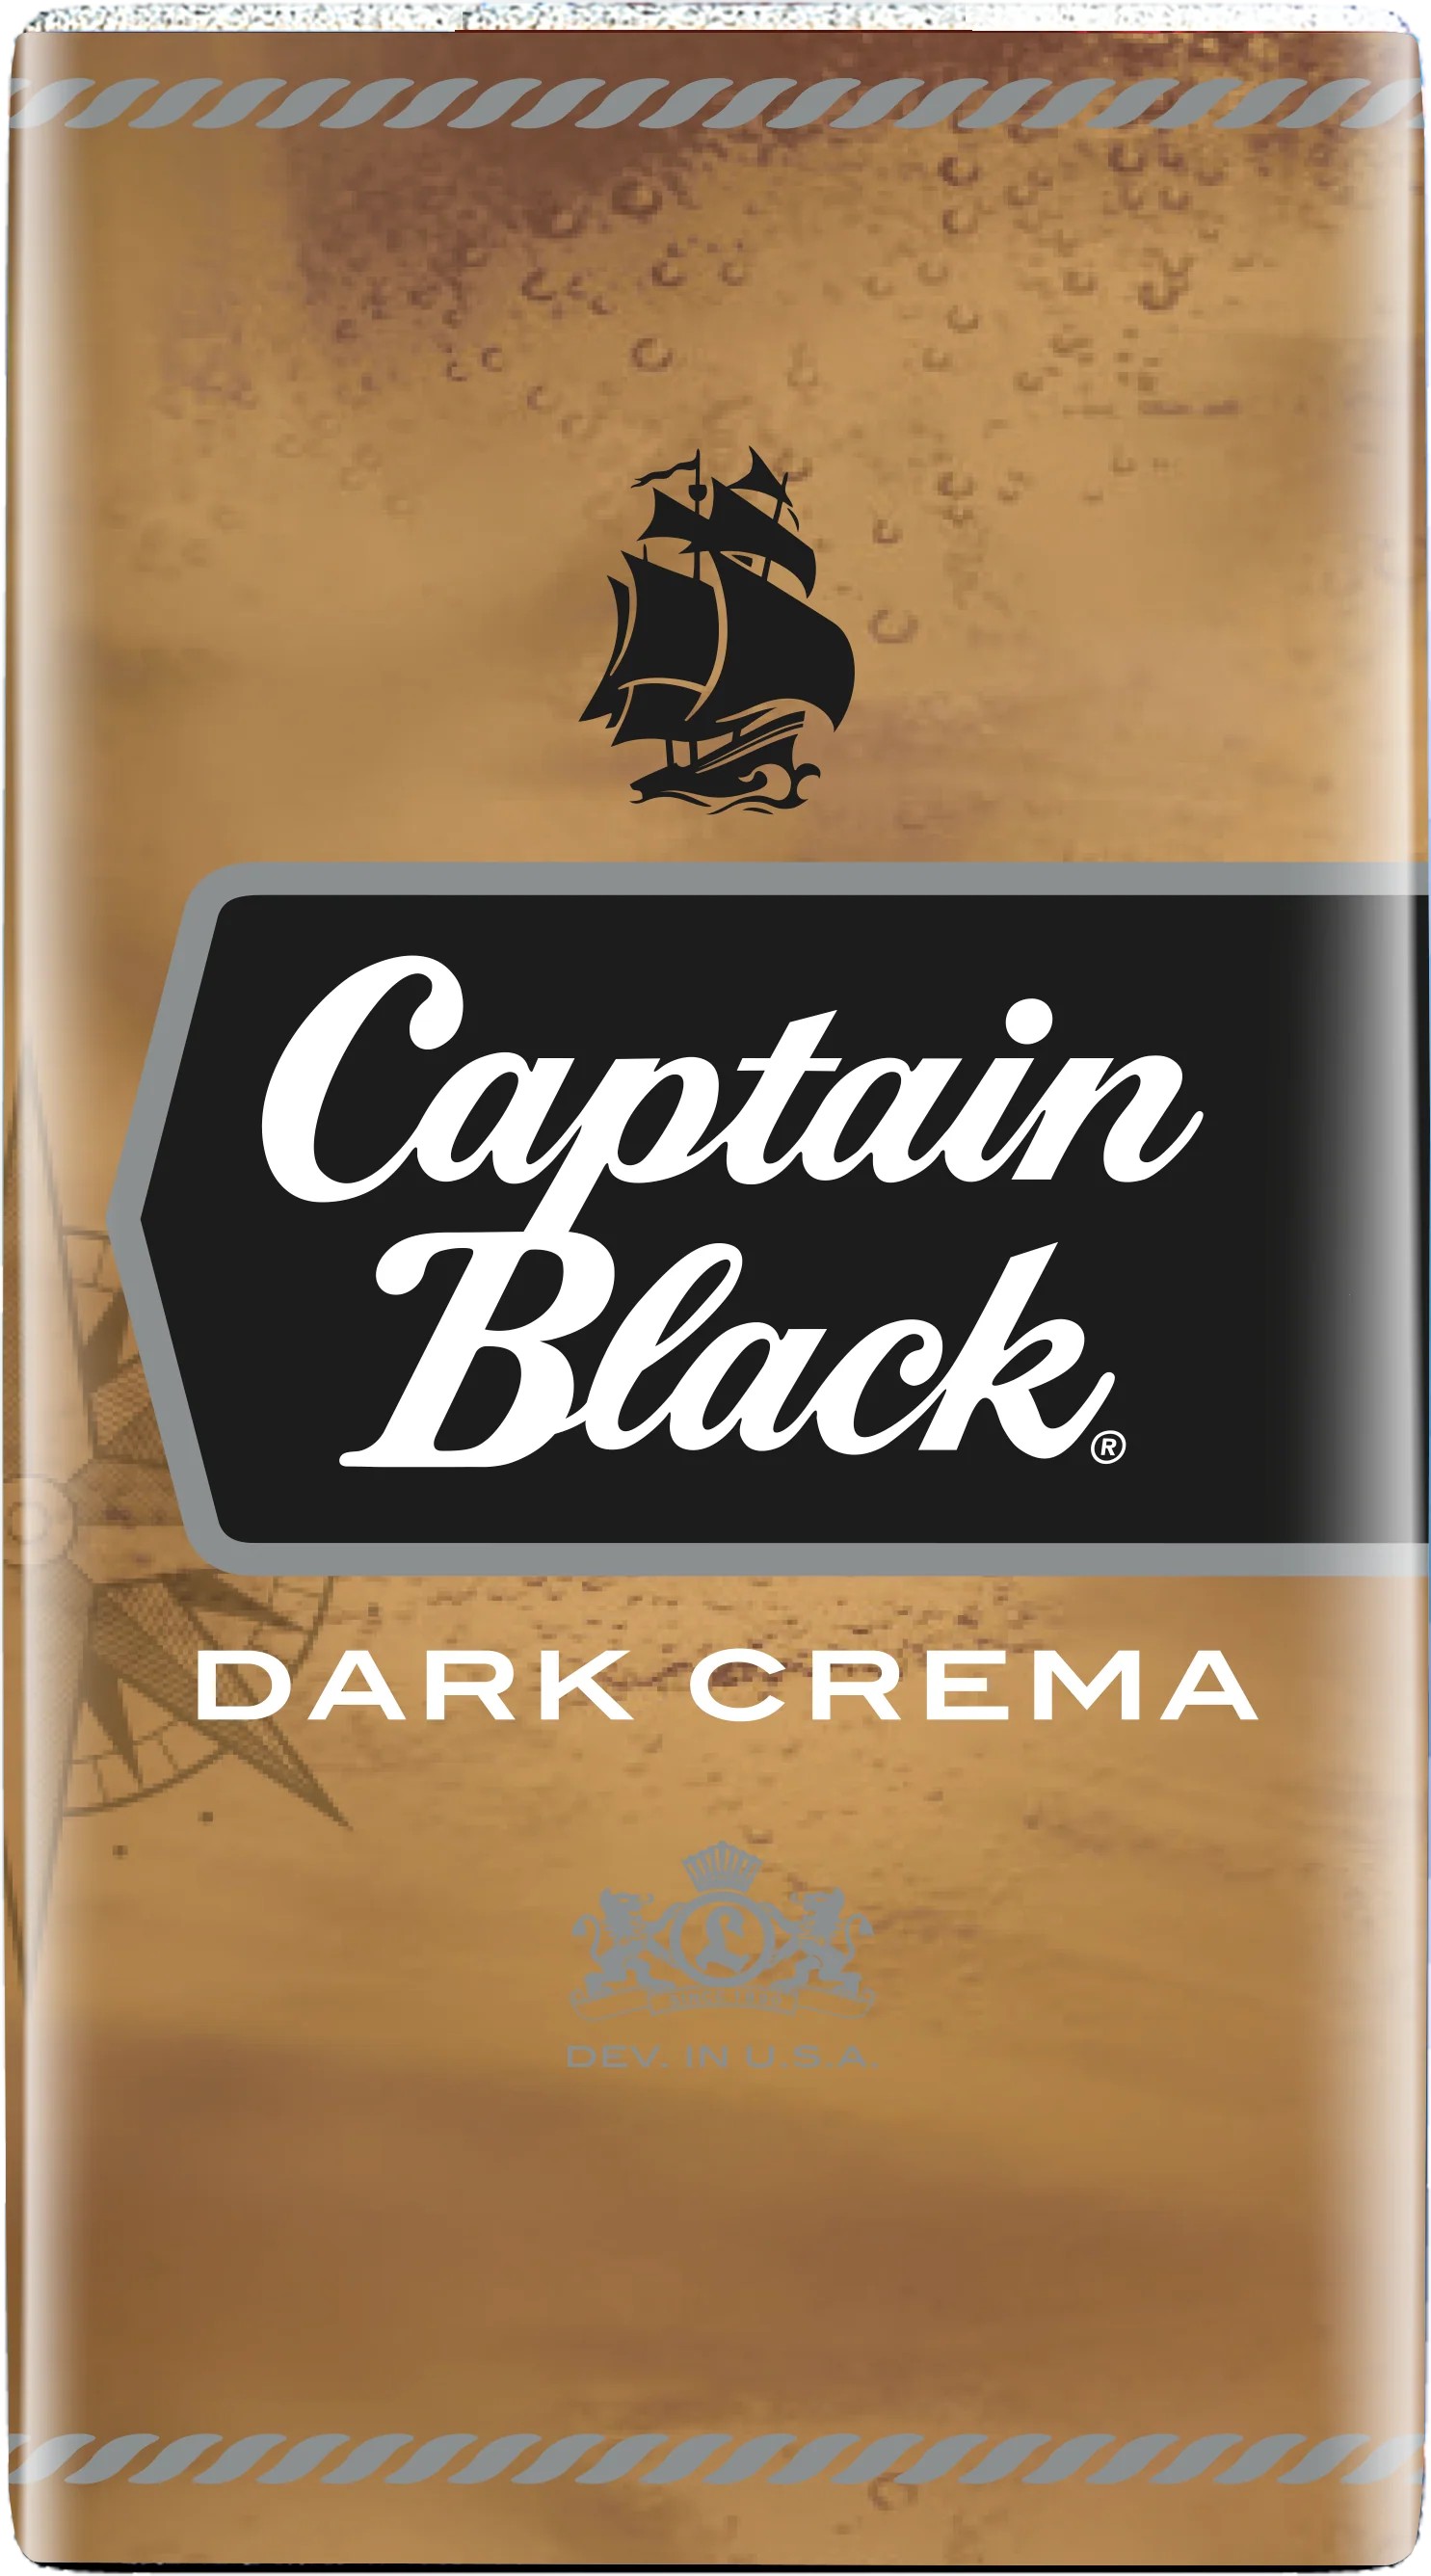 Captain Black Dark Crema image